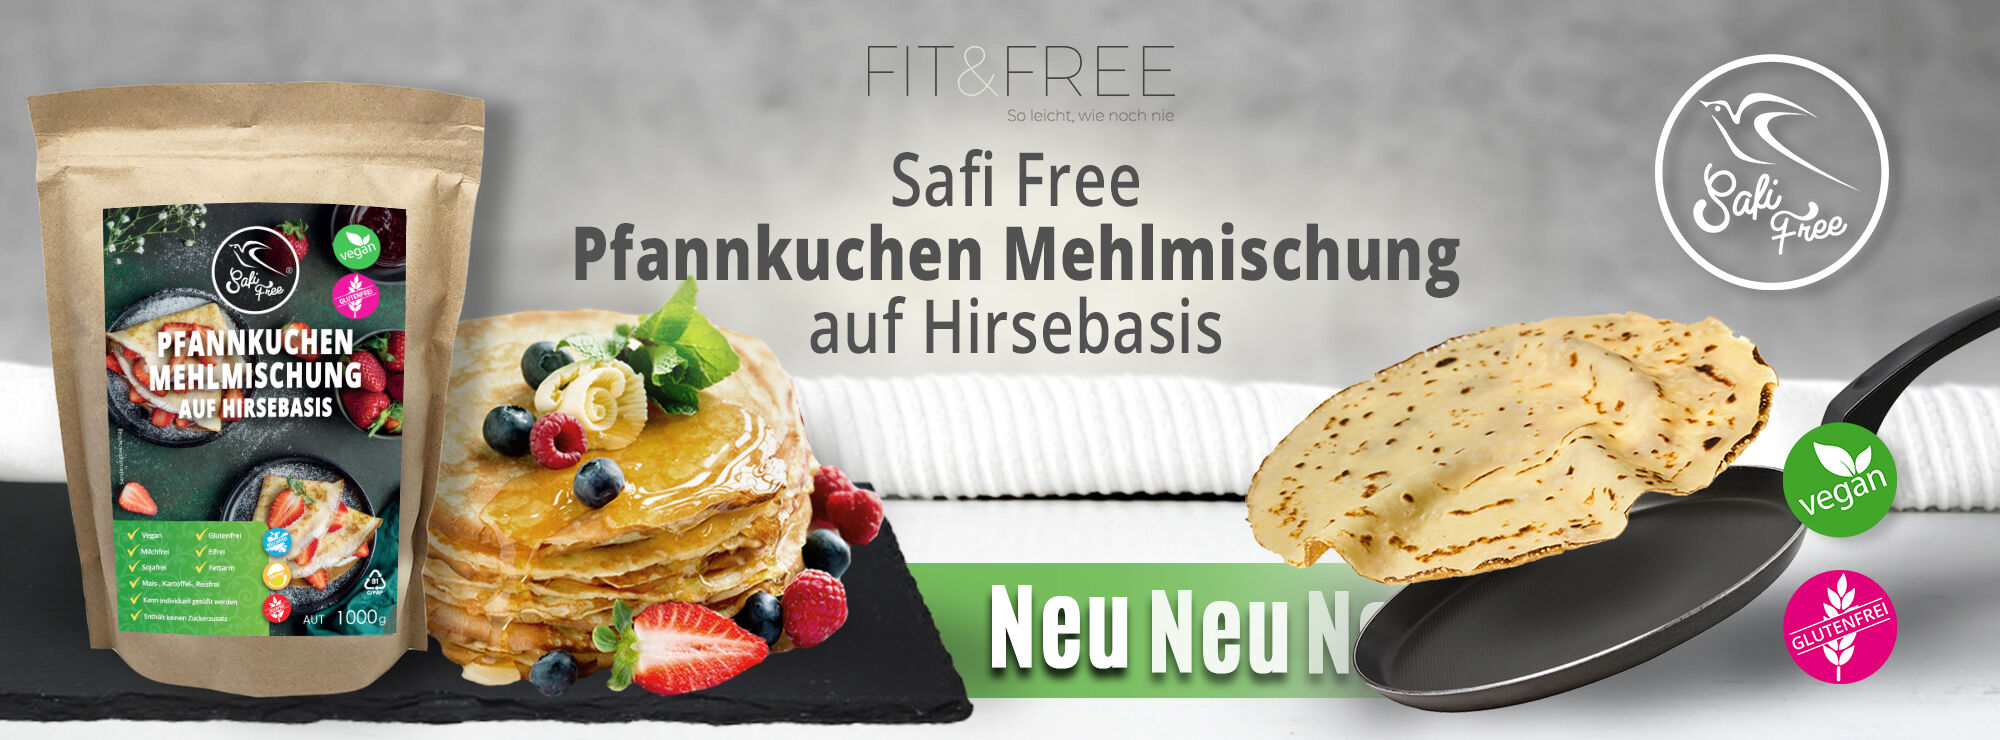 Safi Free Pfannkuchen Mehlmischung auf Hirsebasis